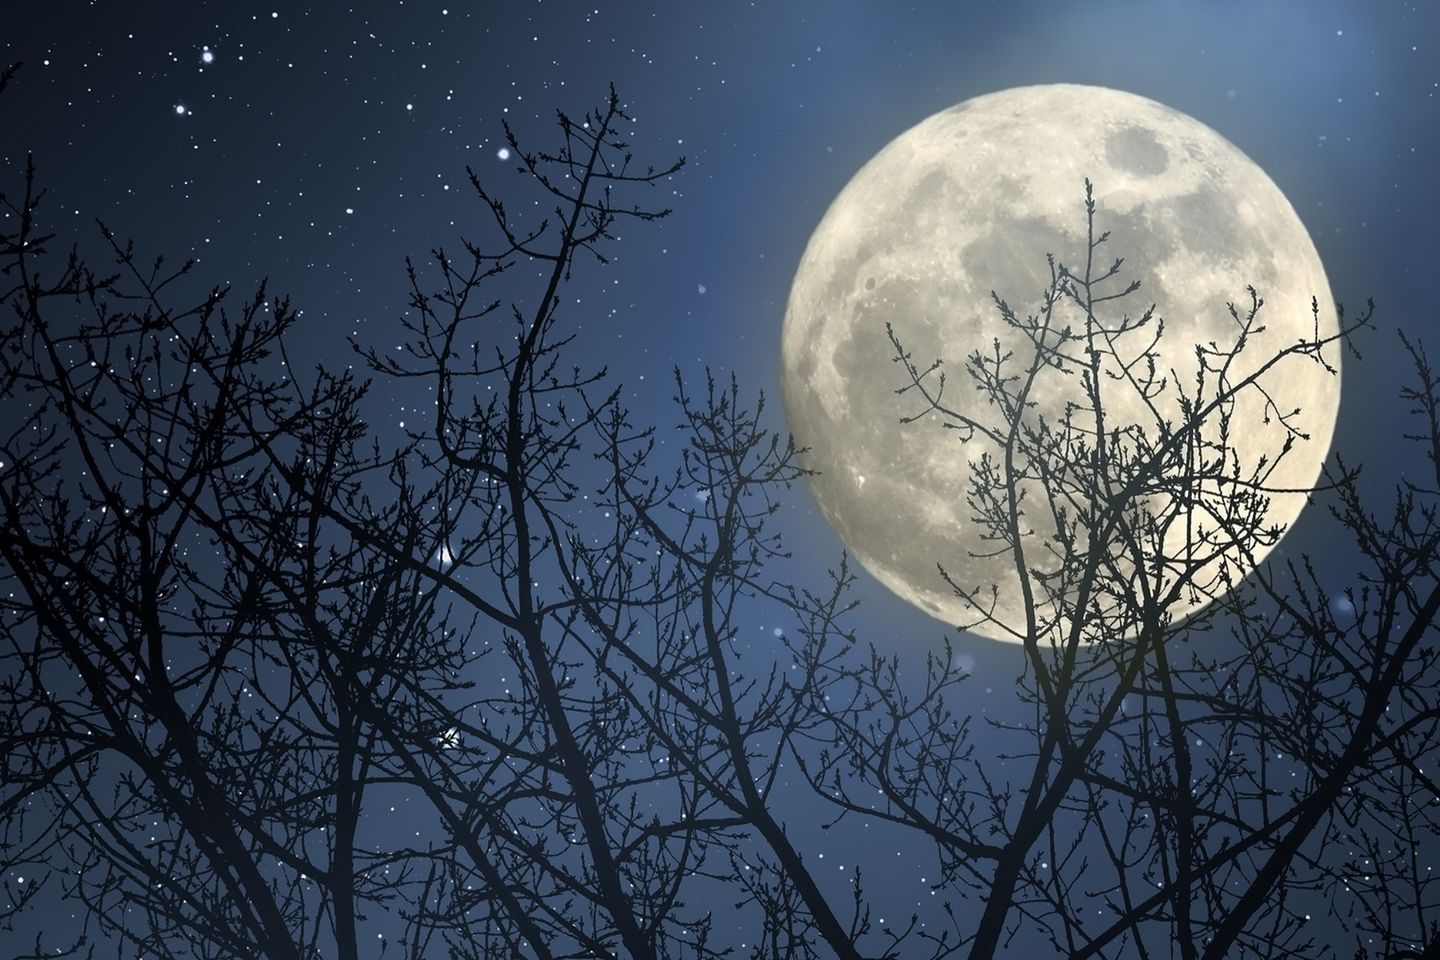 Mondkalender: Mond am Himmel